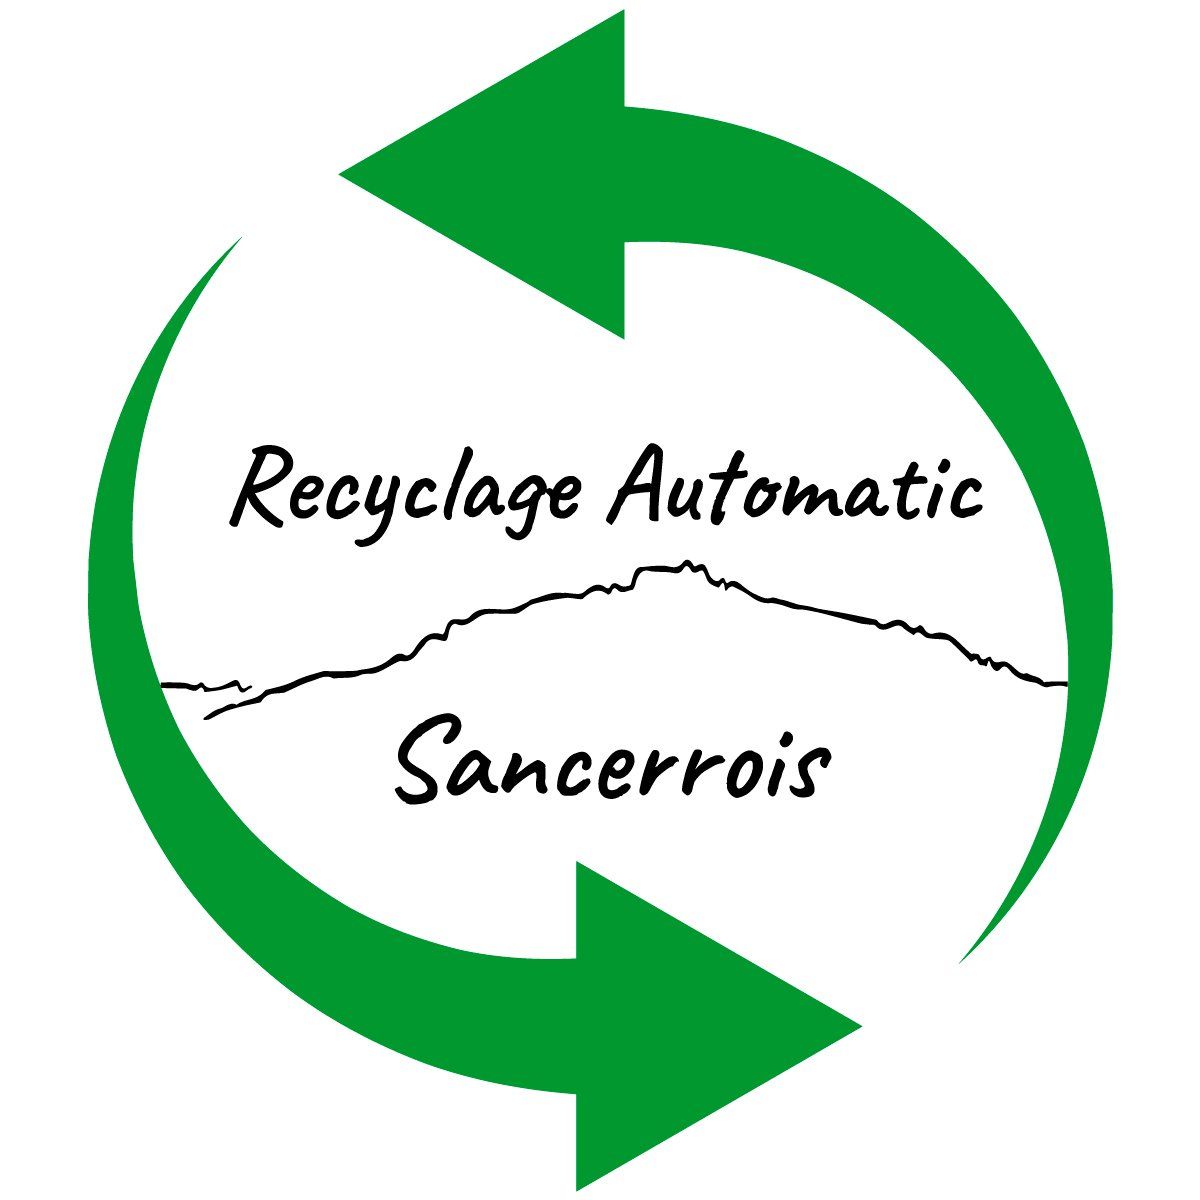 Recyclage Automatic Sancerrois